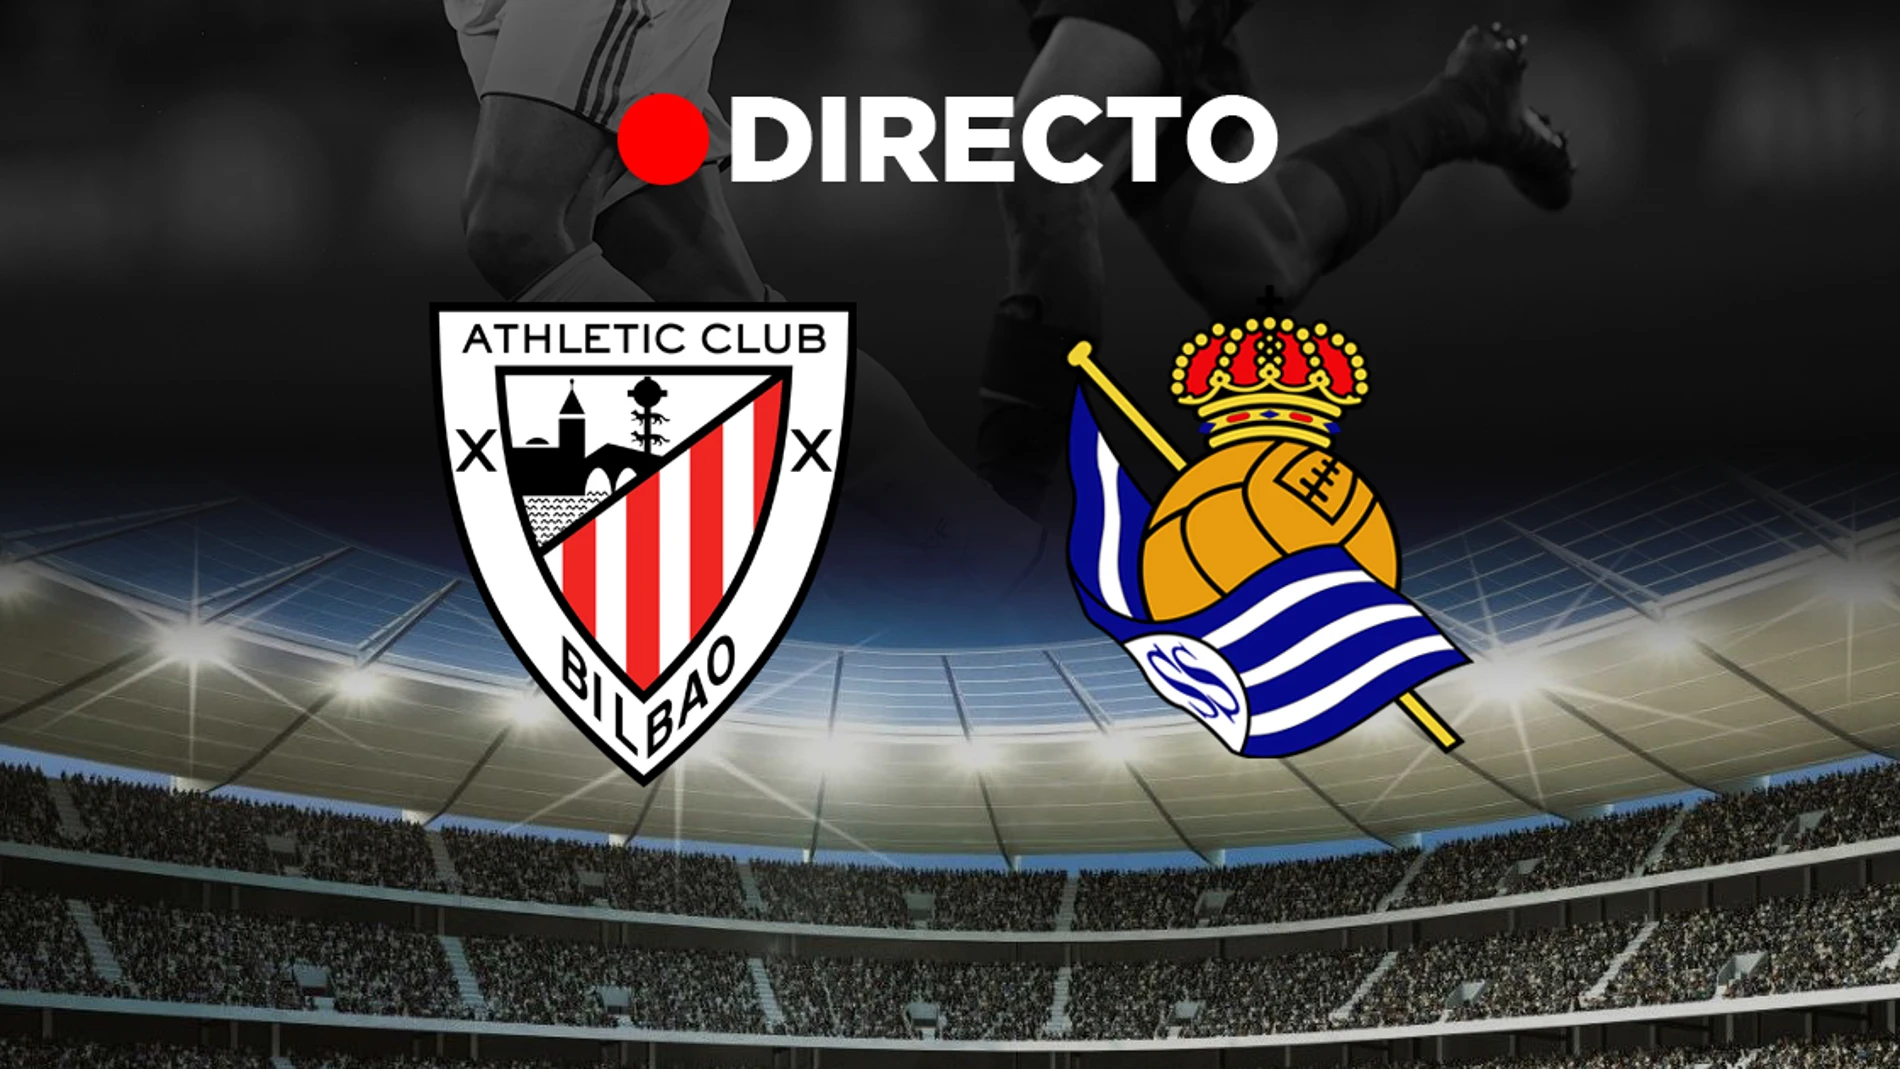 Athletic Club de Bilbao - Real Sociedad: Final de la Copa del Rey de fútbol, en directo